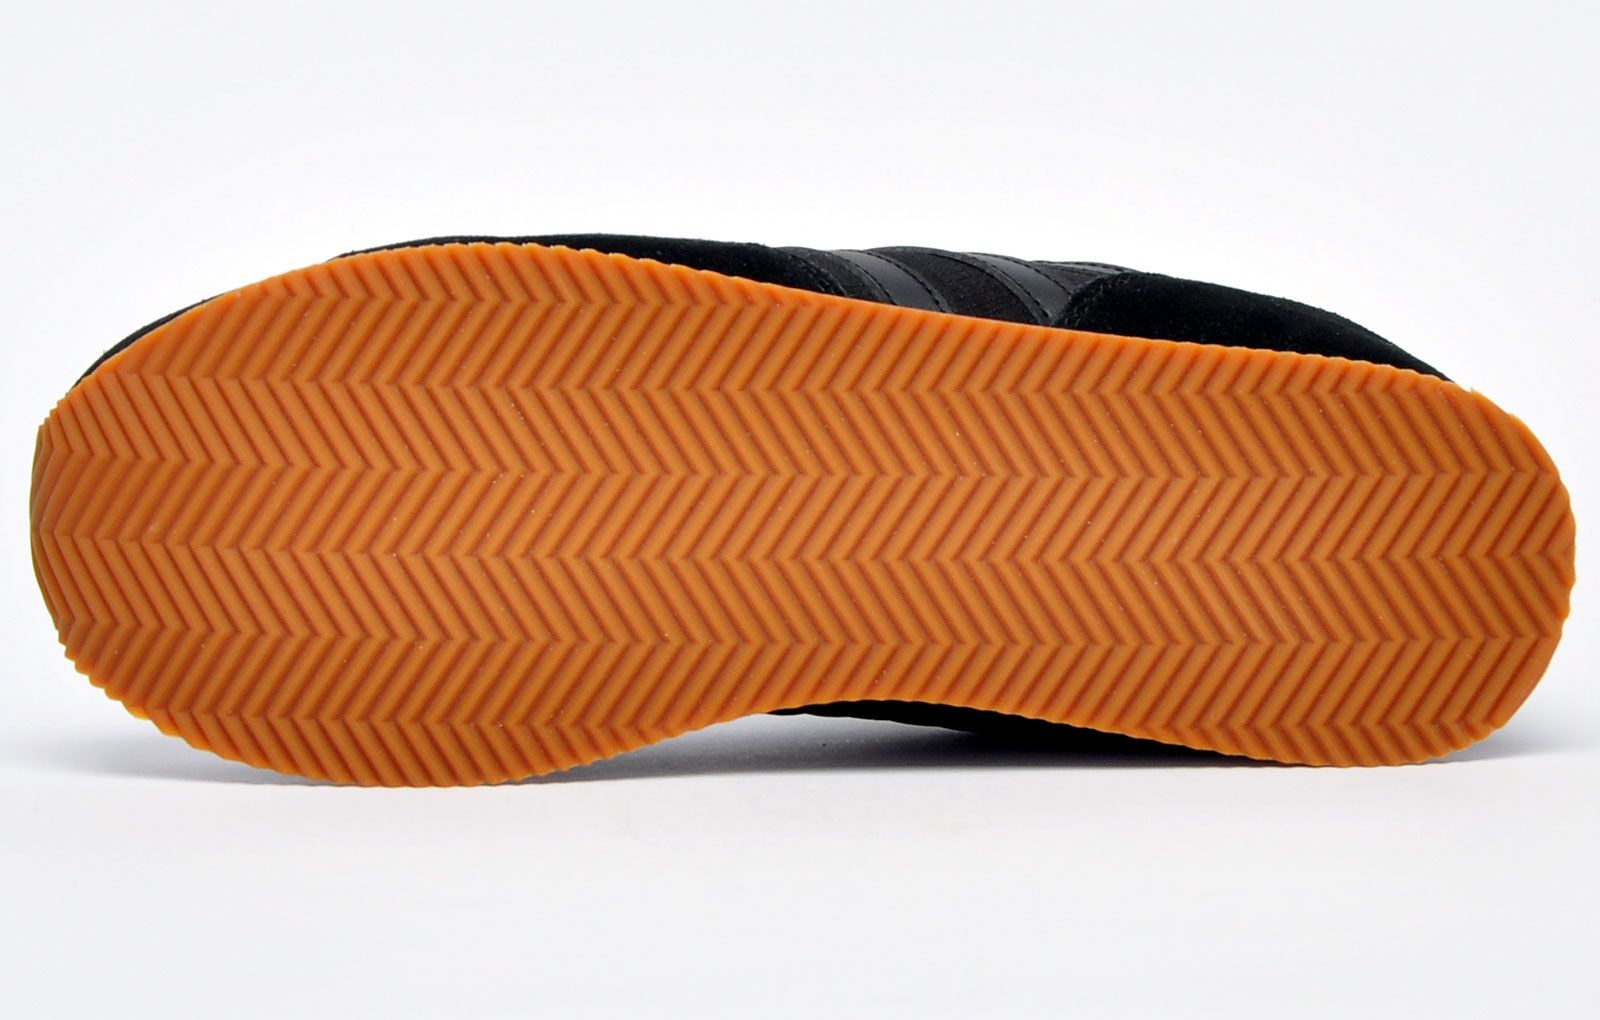 De K Swiss Court Casper is een klassieke sneaker gemaakt van een luxe wit leer/synthetisch mix bovenwerk met het iconische 5-strepen geperforeerde ontwerp van het merk dat de zijkanten siert, wat een ongerepte designerlook oplevert die iedereen met t